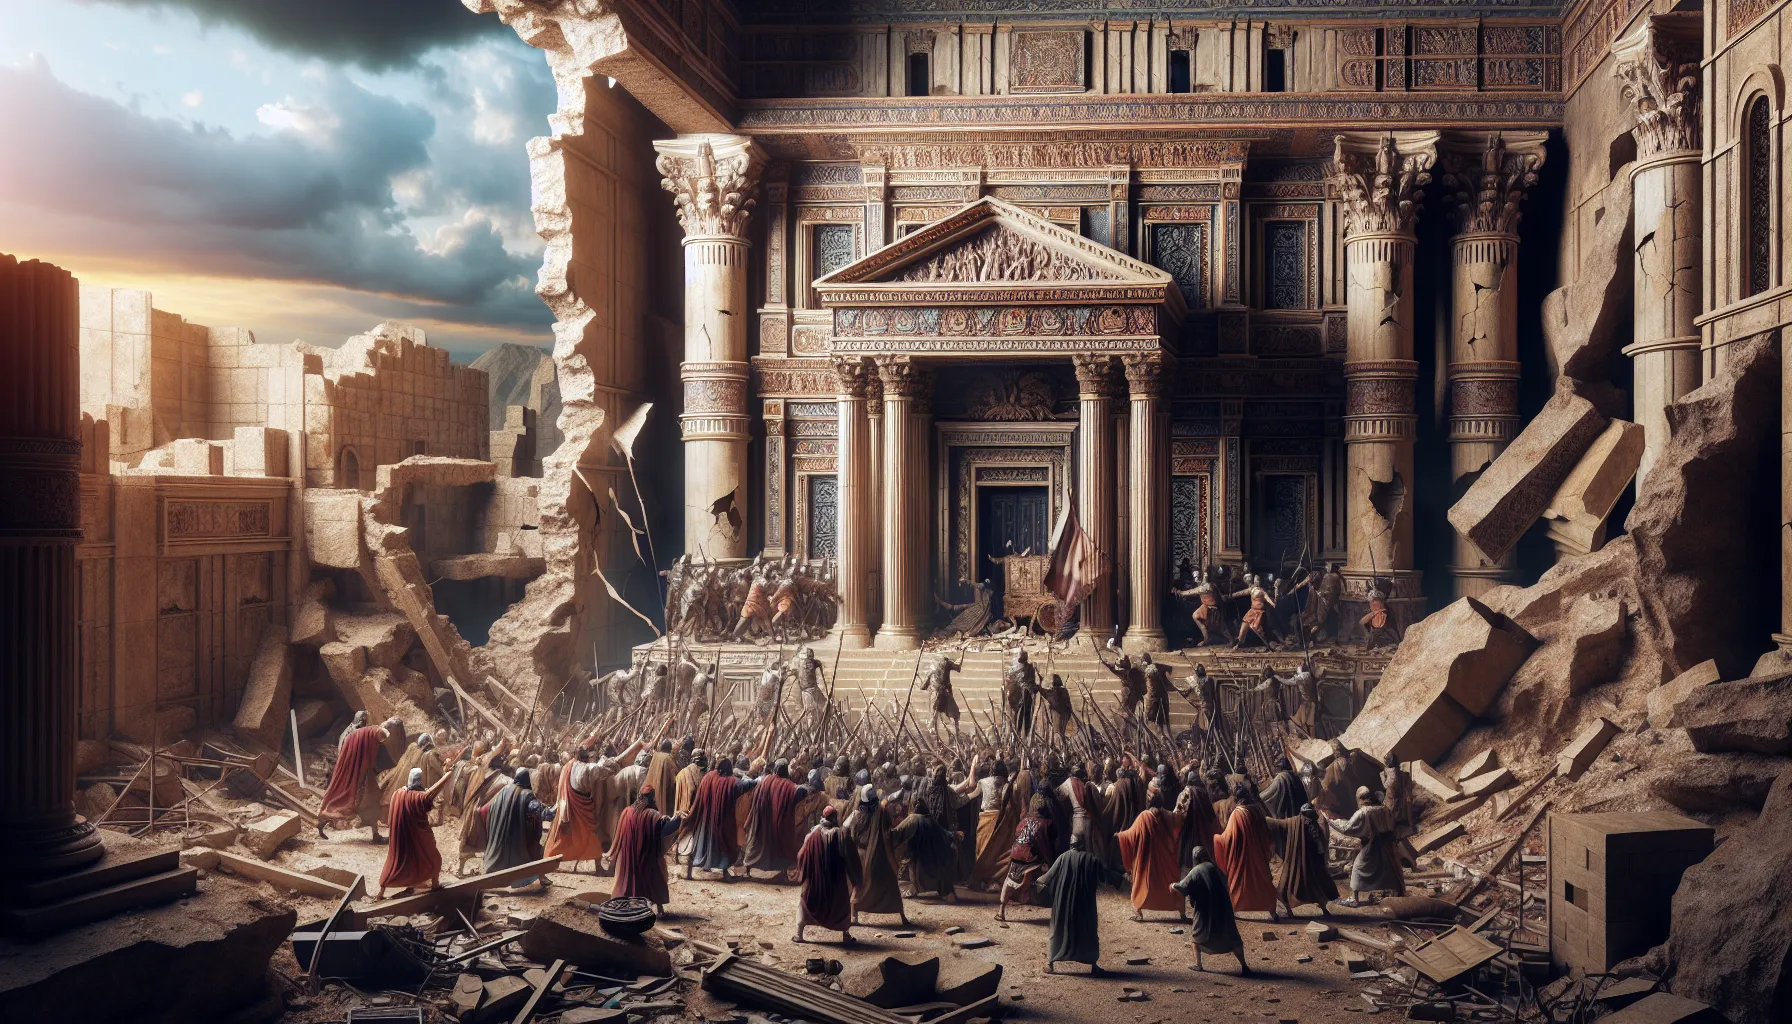 Representación visual de la destrucción del Templo de Jerusalén y el exilio babilónico del pueblo de Israel.